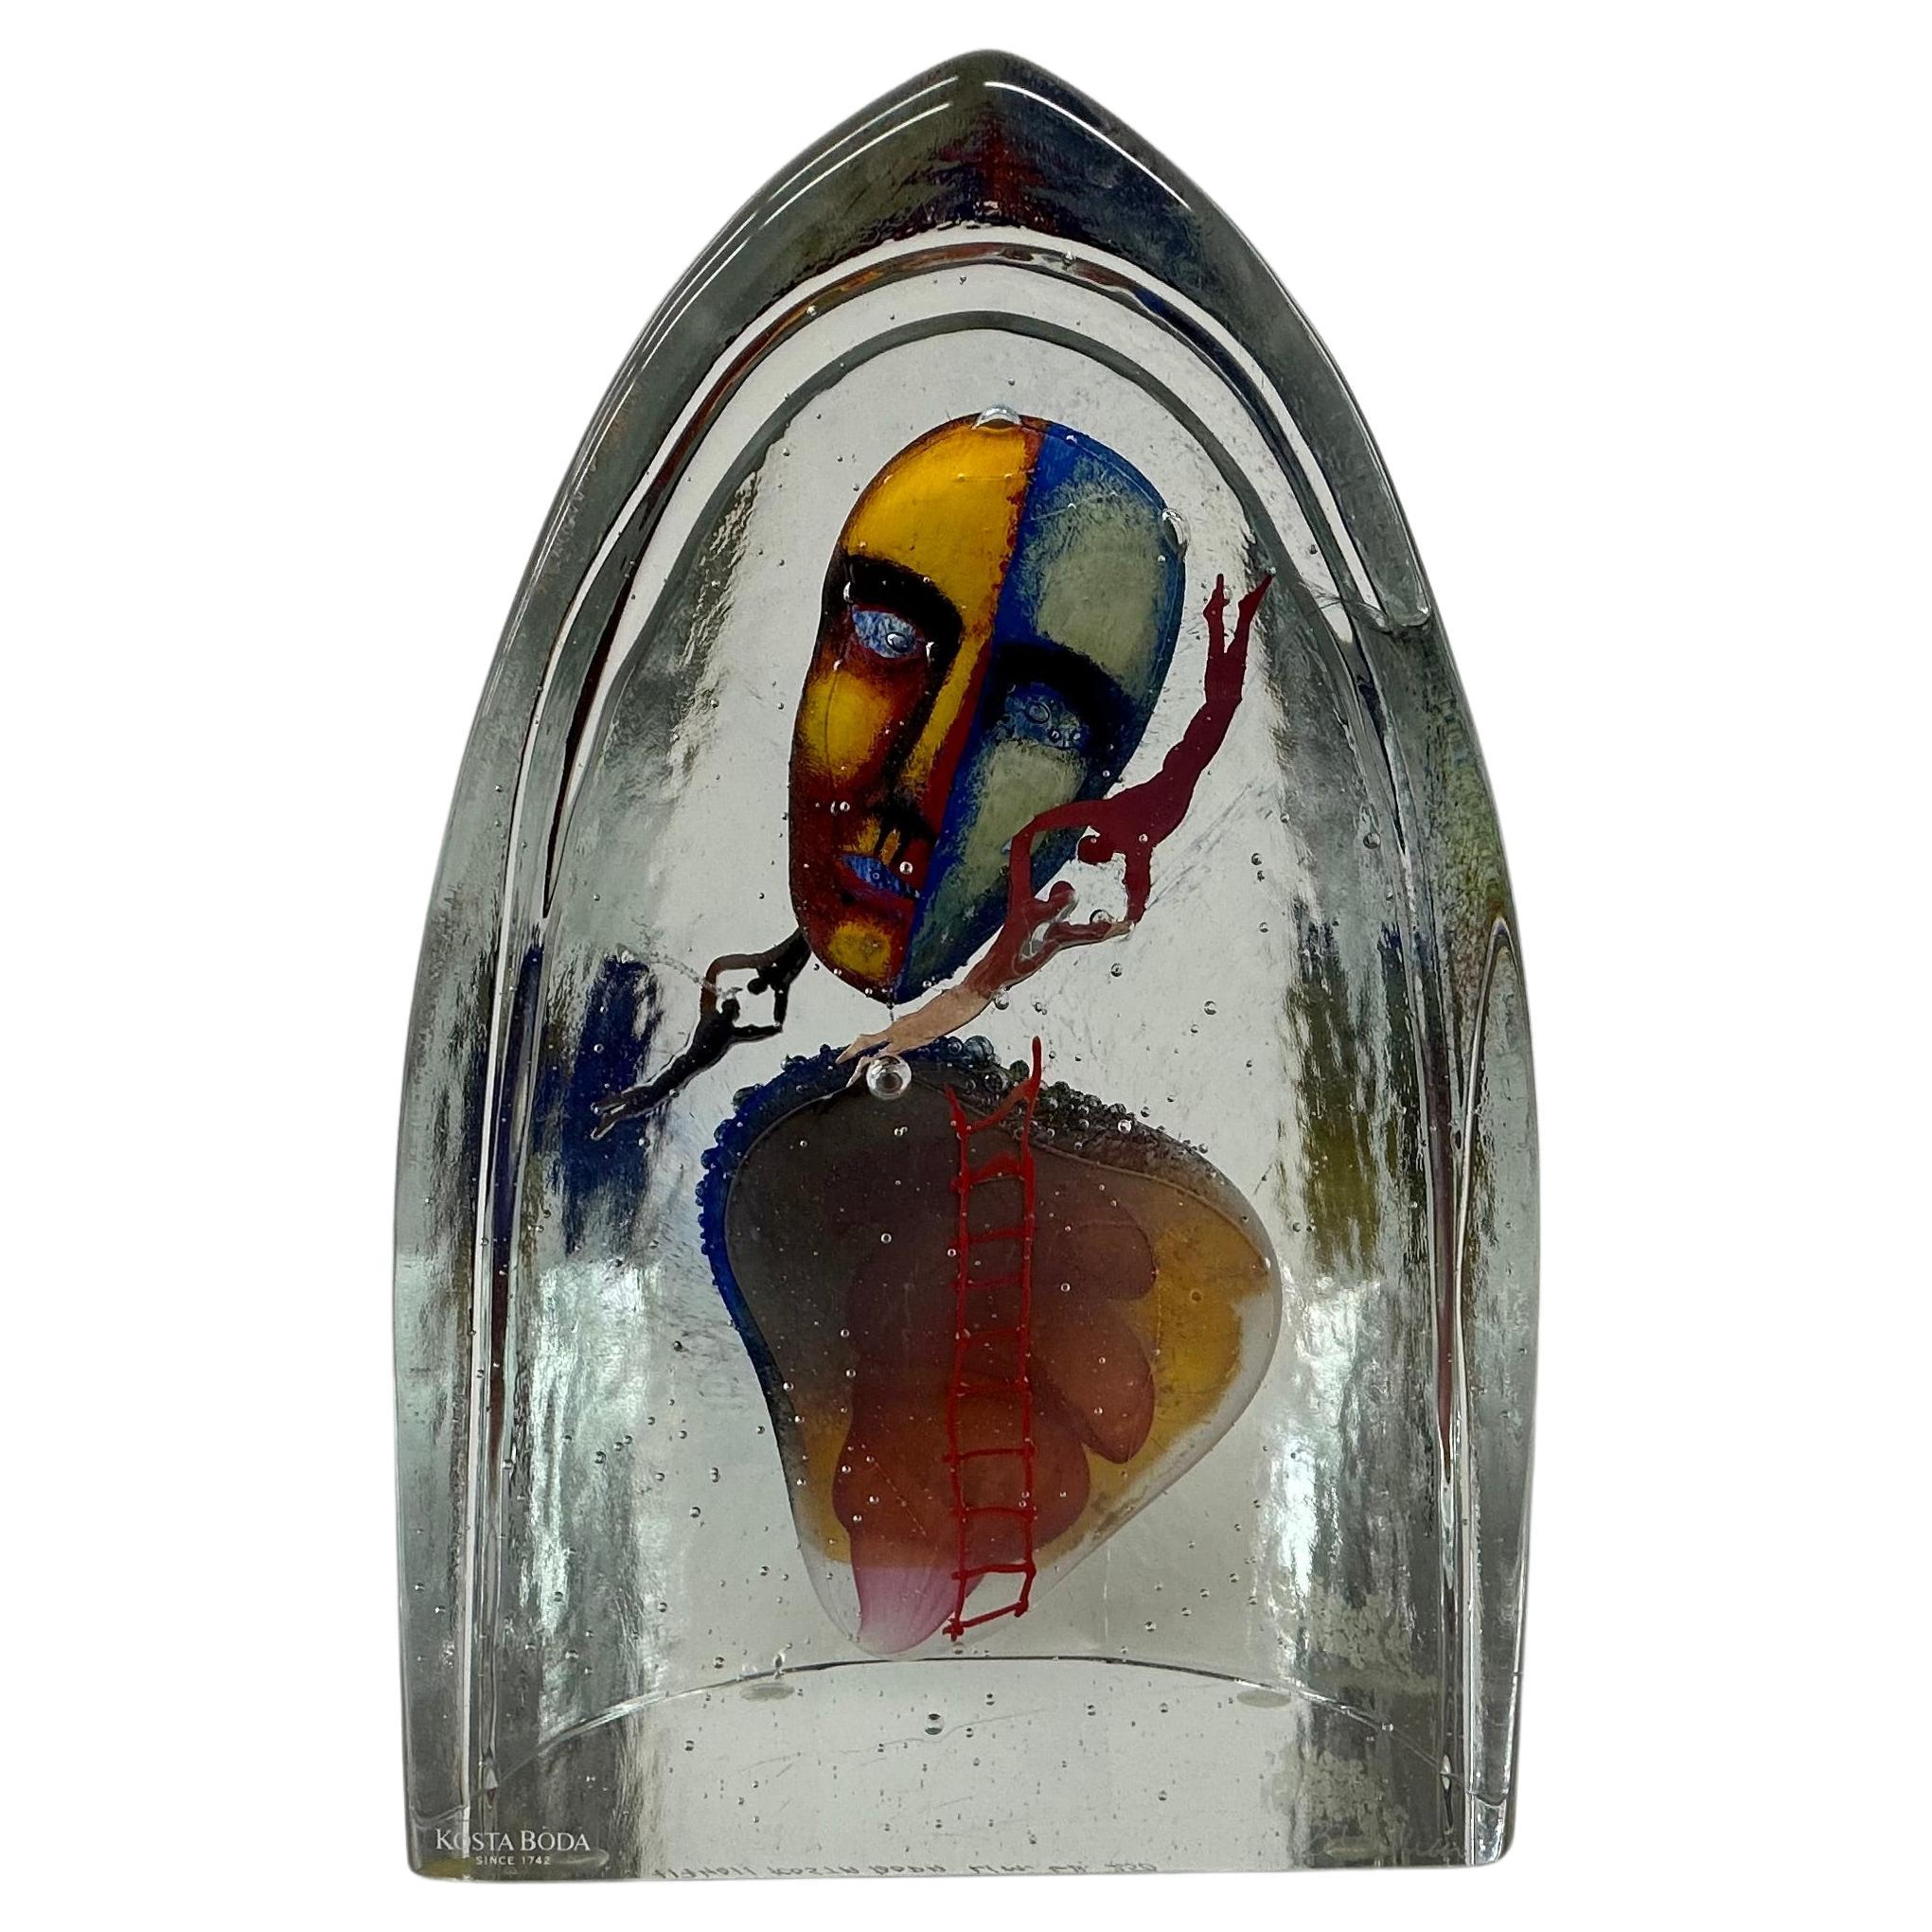 Bertil Vallien für Kosta Boda Glas 'Together' Skulptur Limitierte Auflage